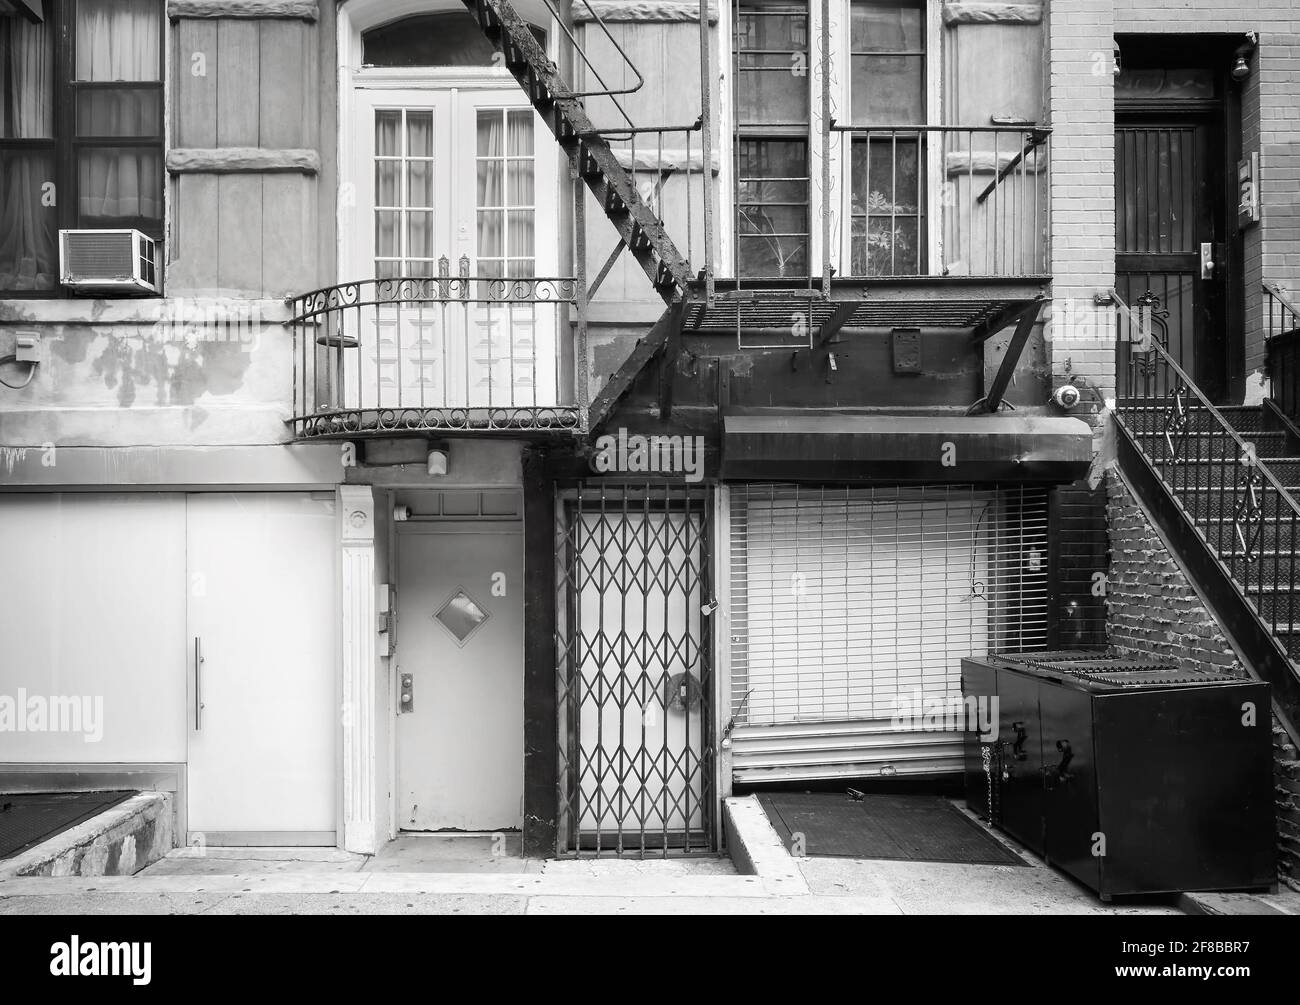 Immagine in bianco e nero della vecchia facciata dell'edificio con fuga da fuoco di ferro, New York City, USA. Foto Stock